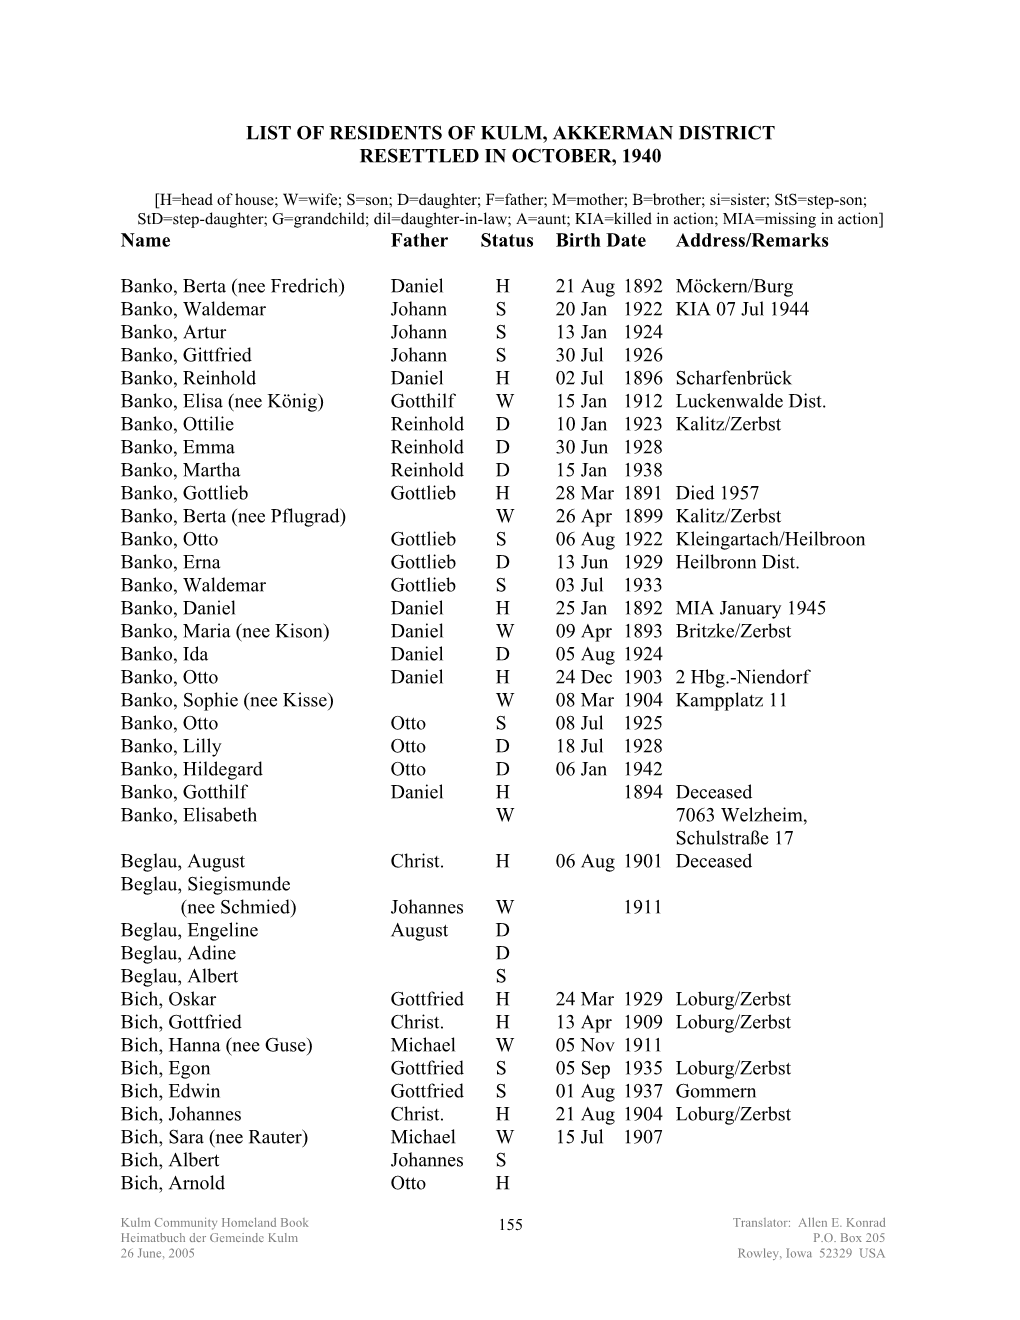 List of Residents of Kulm, Akkerman District Resettled in October, 1940